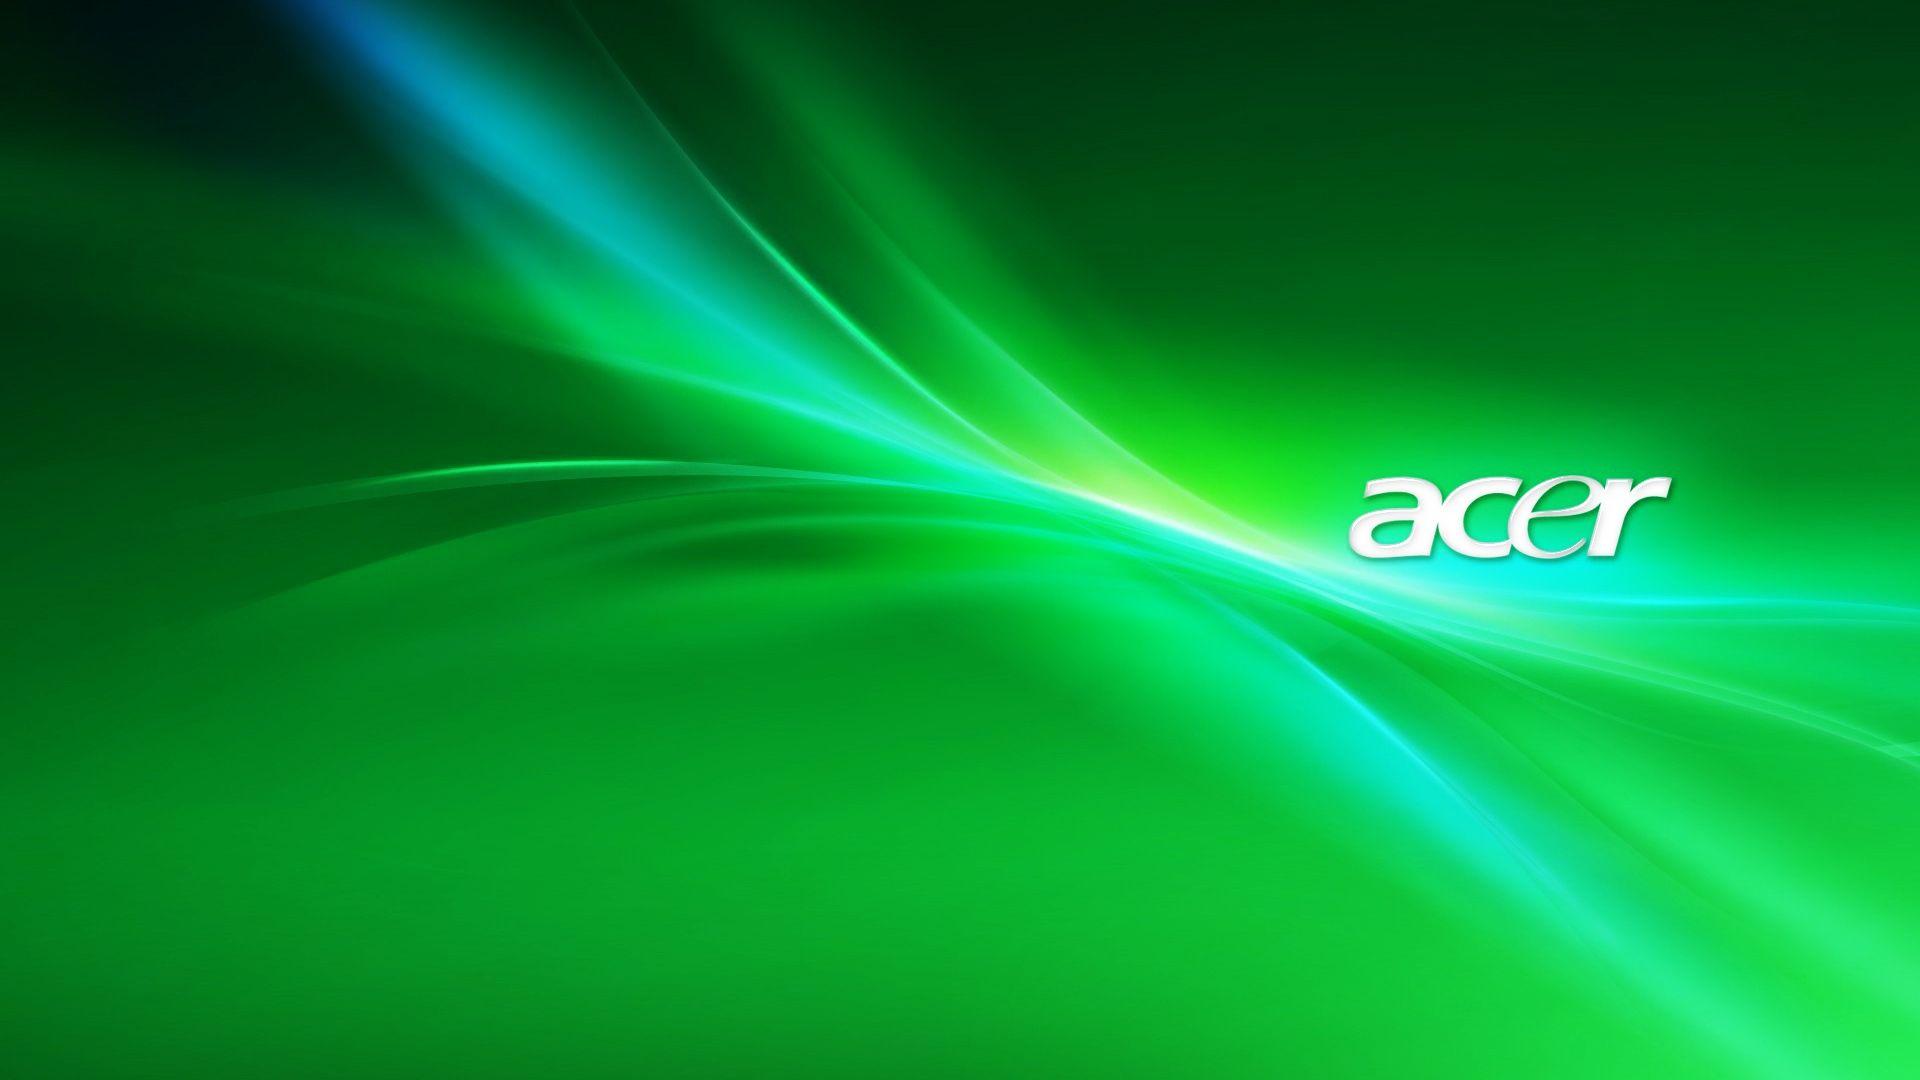 Acer Wallpaper For Windows 7: Acer Wallpaper Wallpaper. .Ssofc